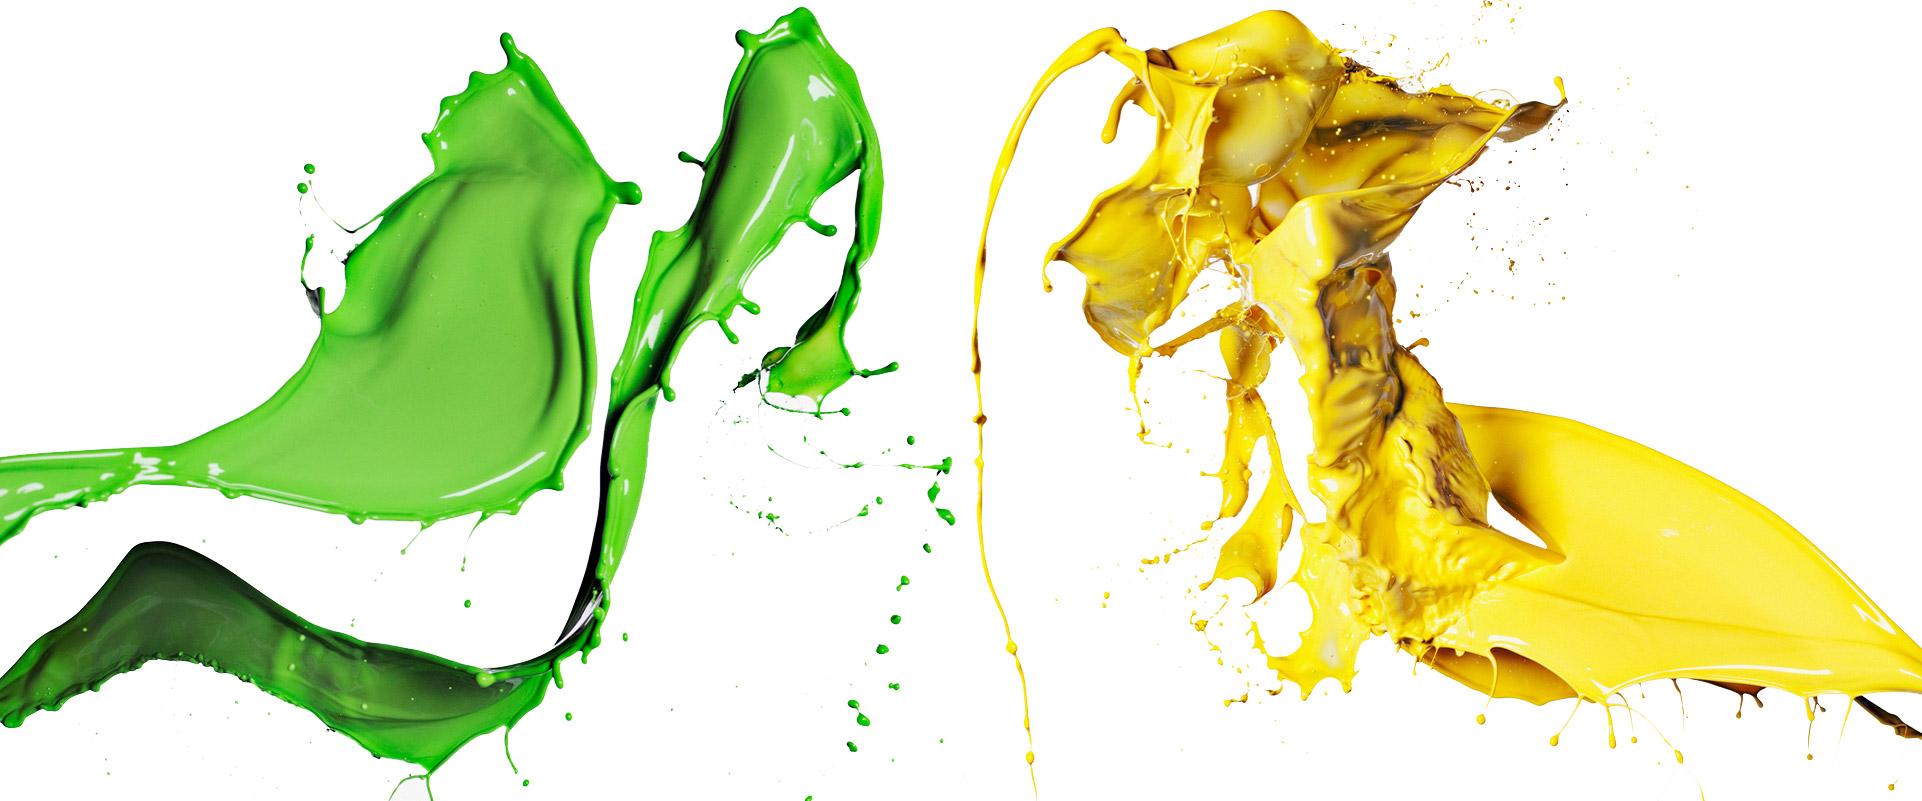 zielono-żółty rozprysk farby